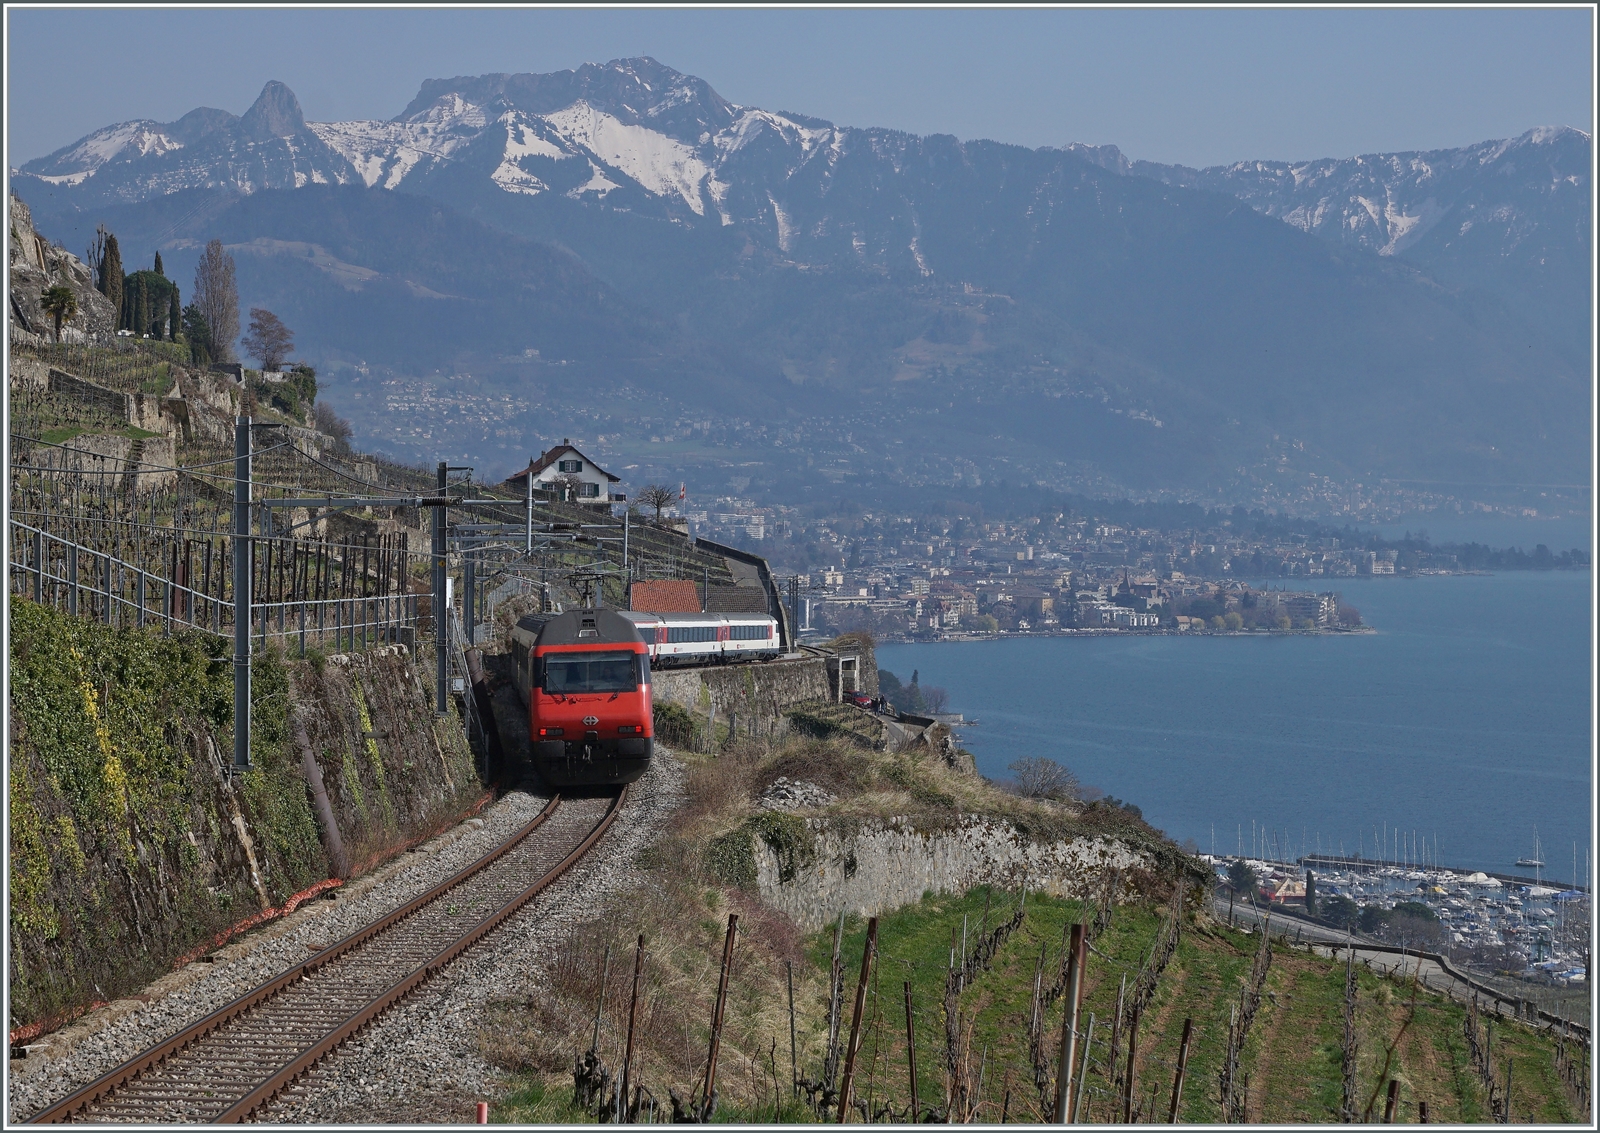 Infolge Bauarbeiten zwischen Vevy und Lausanne wurden die IR/RE via Puidoux umgeleitet, was auf dieser recht steilen Strecke eher ungewöhnliche Aufnahmen langer Züge ermöglichte. ein SBB Re 460 ist mit einem IR oberhalb von St-Saphorin auf dem Weg nach Vevey.

20. März 2022